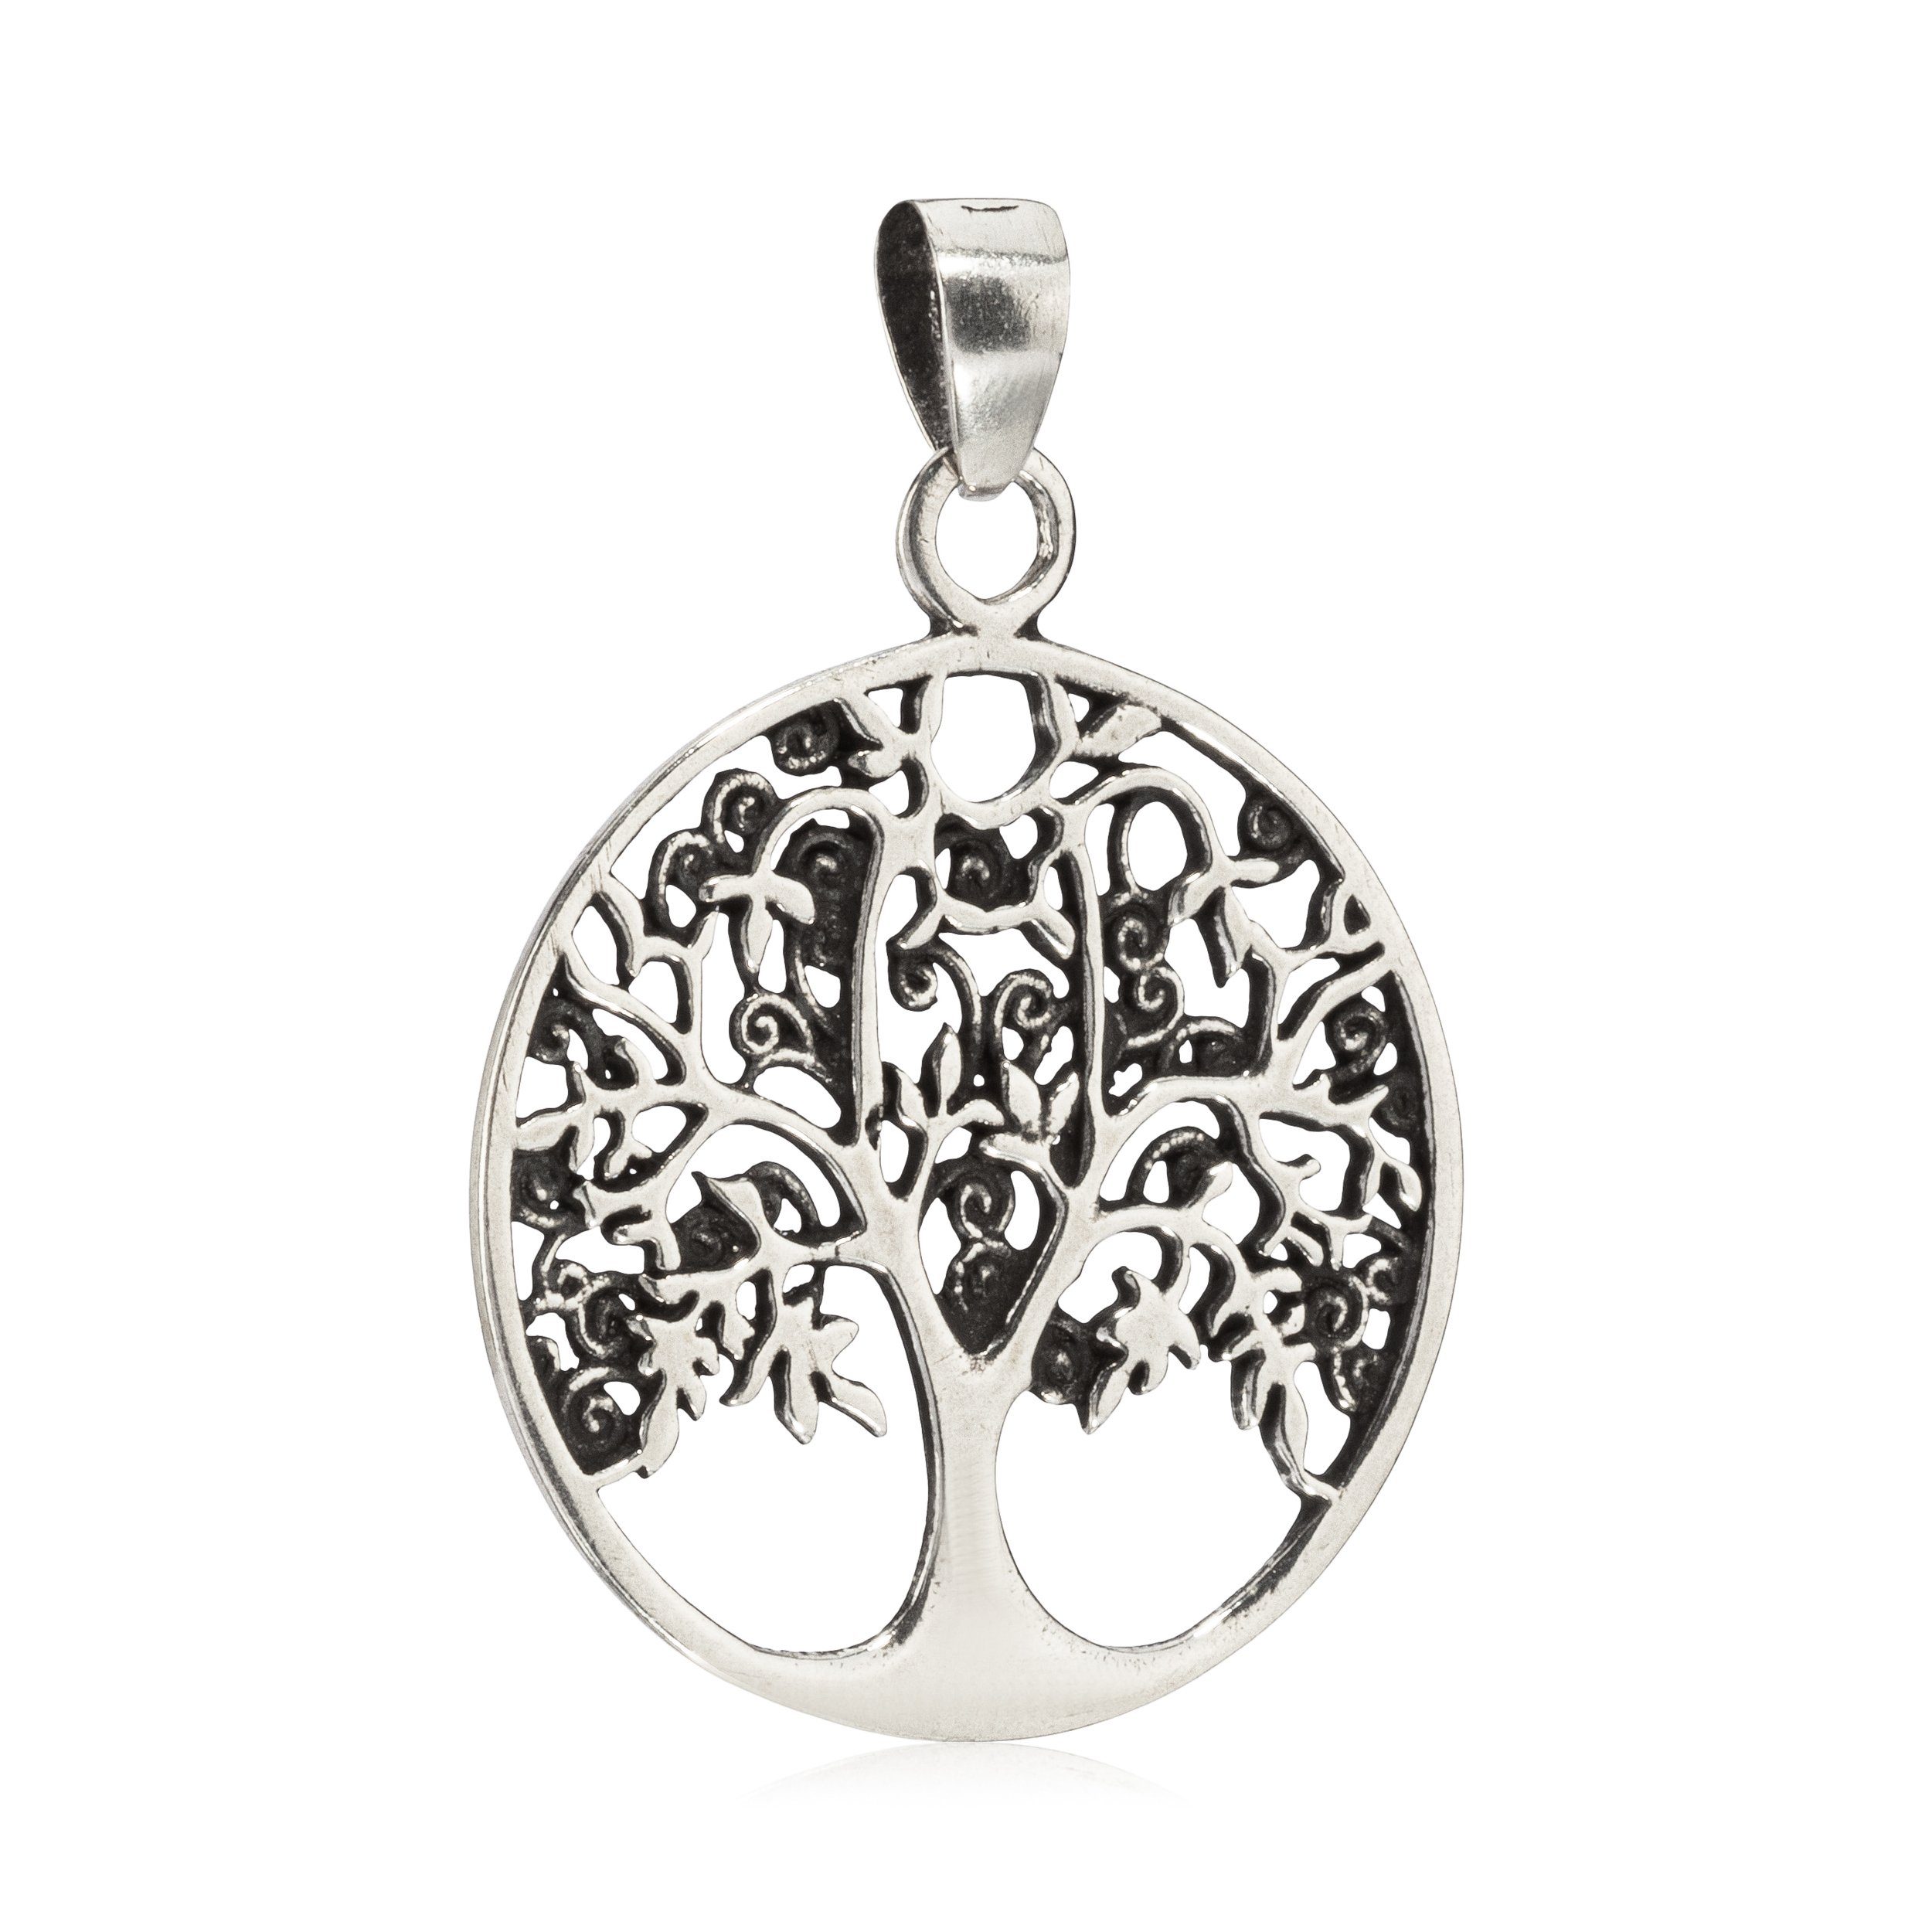 NKlaus Kettenanhänger Kettenanhänger Baum des Lebens 925 Silber 2,3cm T, 925 Sterling Silber Silberschmuck für Damen